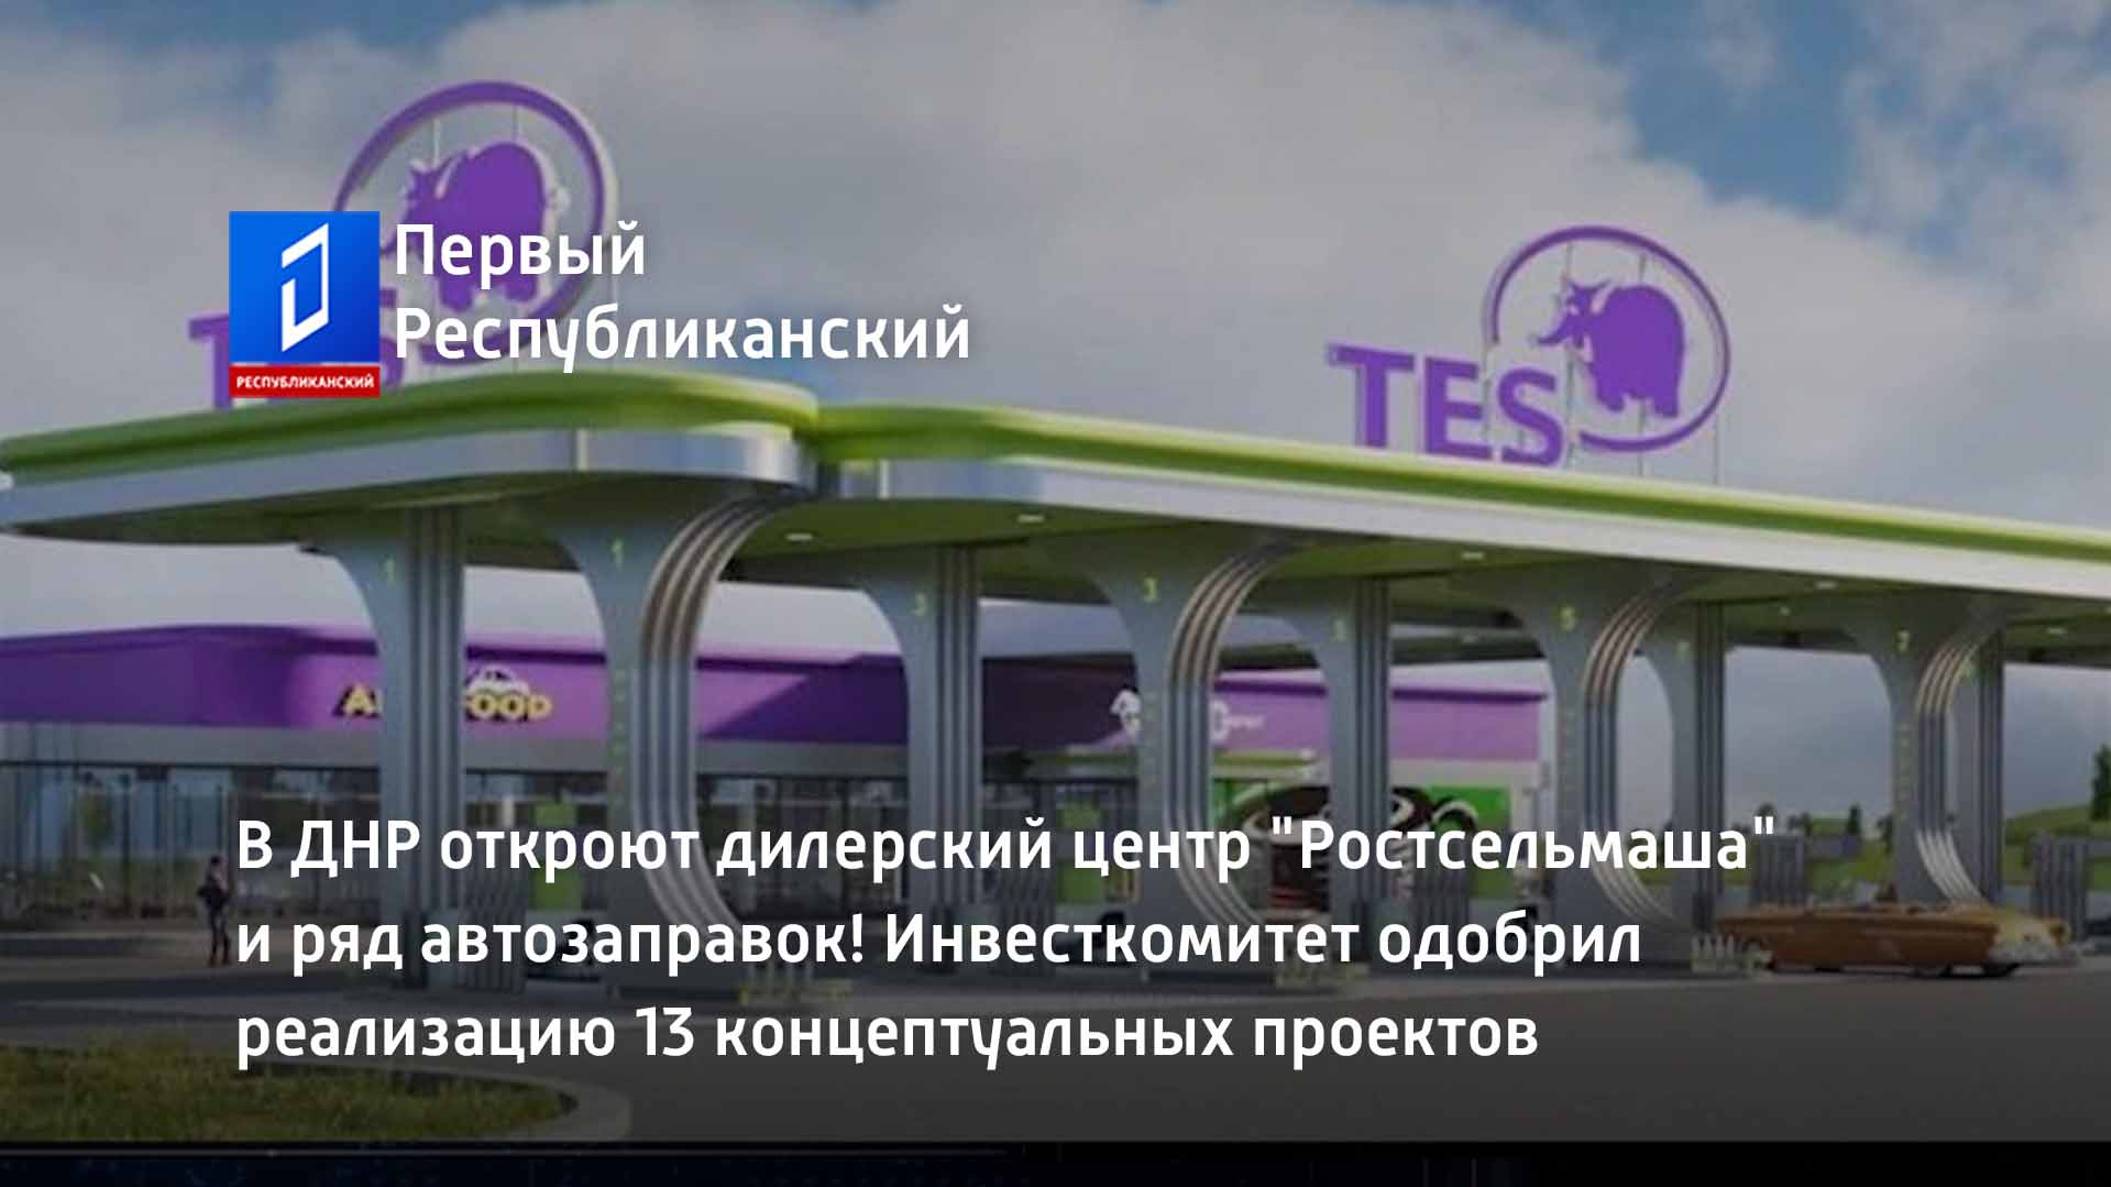 В ДНР откроют дилерский центр "Ростсельмаша" и ряд автозаправок!